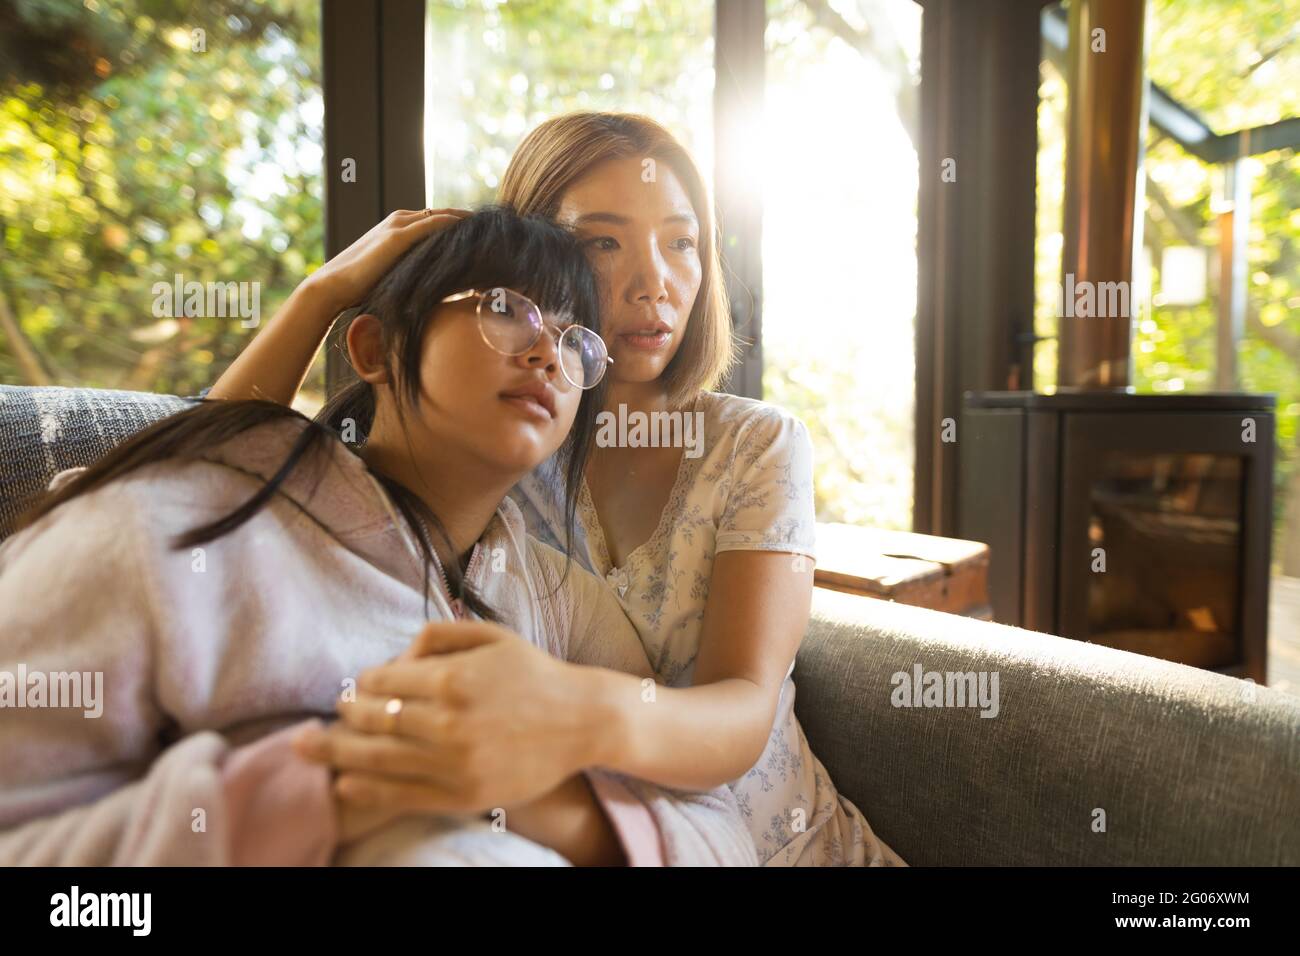 Portrait d'une triste femme asiatique avec sa fille embrassant assis sur un canapé Banque D'Images